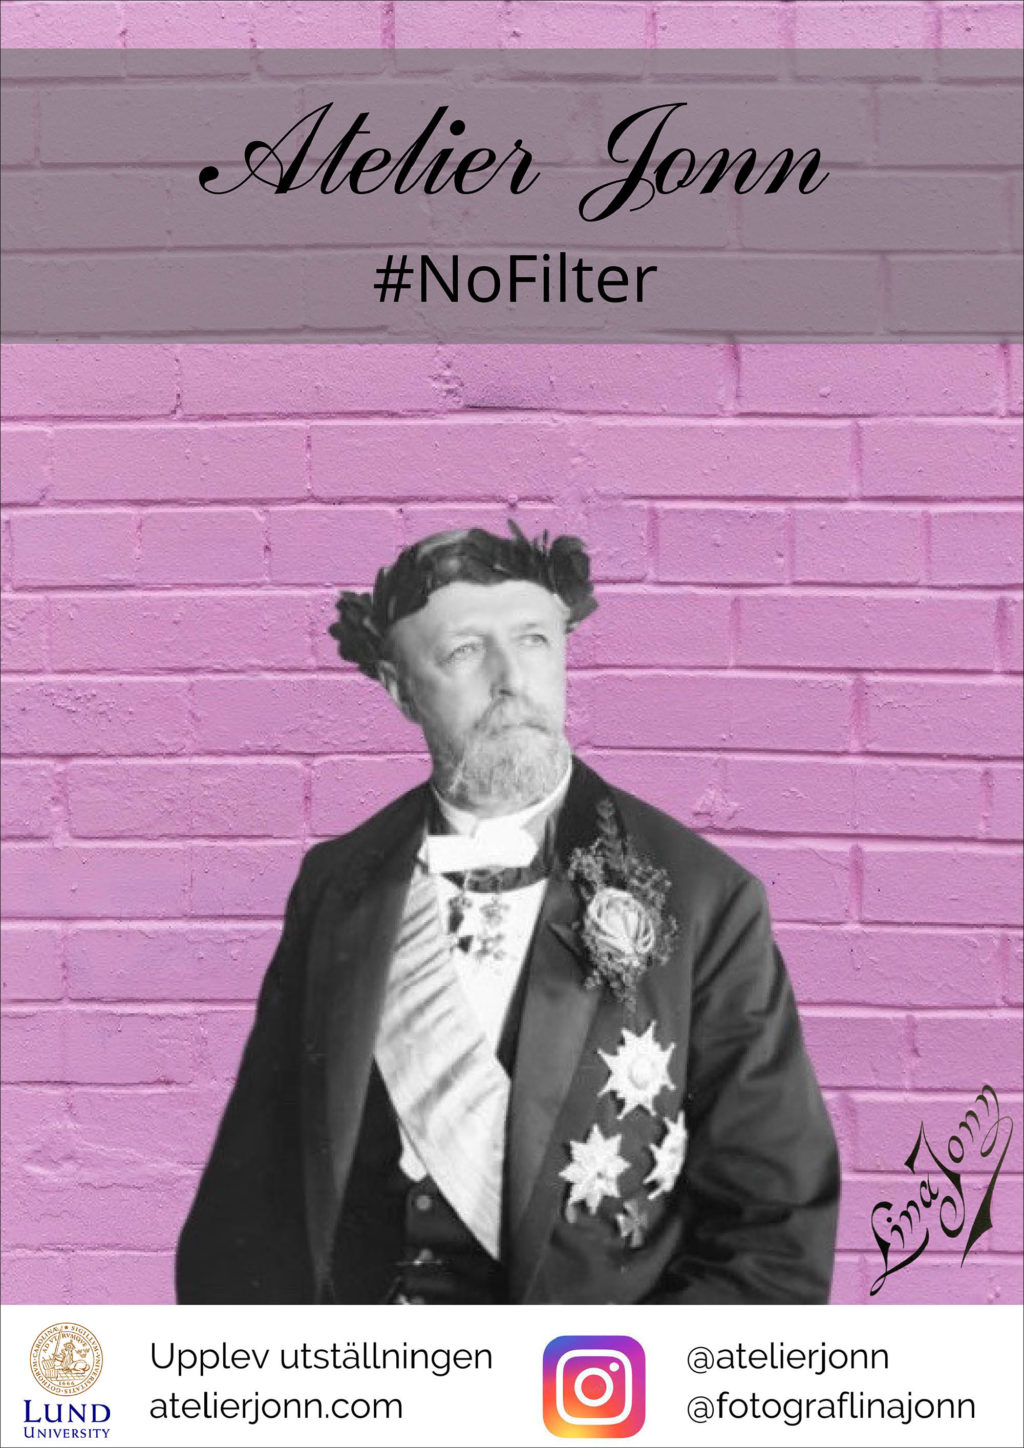 Affisch för den digitala utställningen "Atelier Jonn – #NoFilter", gjord av masterstudenter vid Lunds universitet.